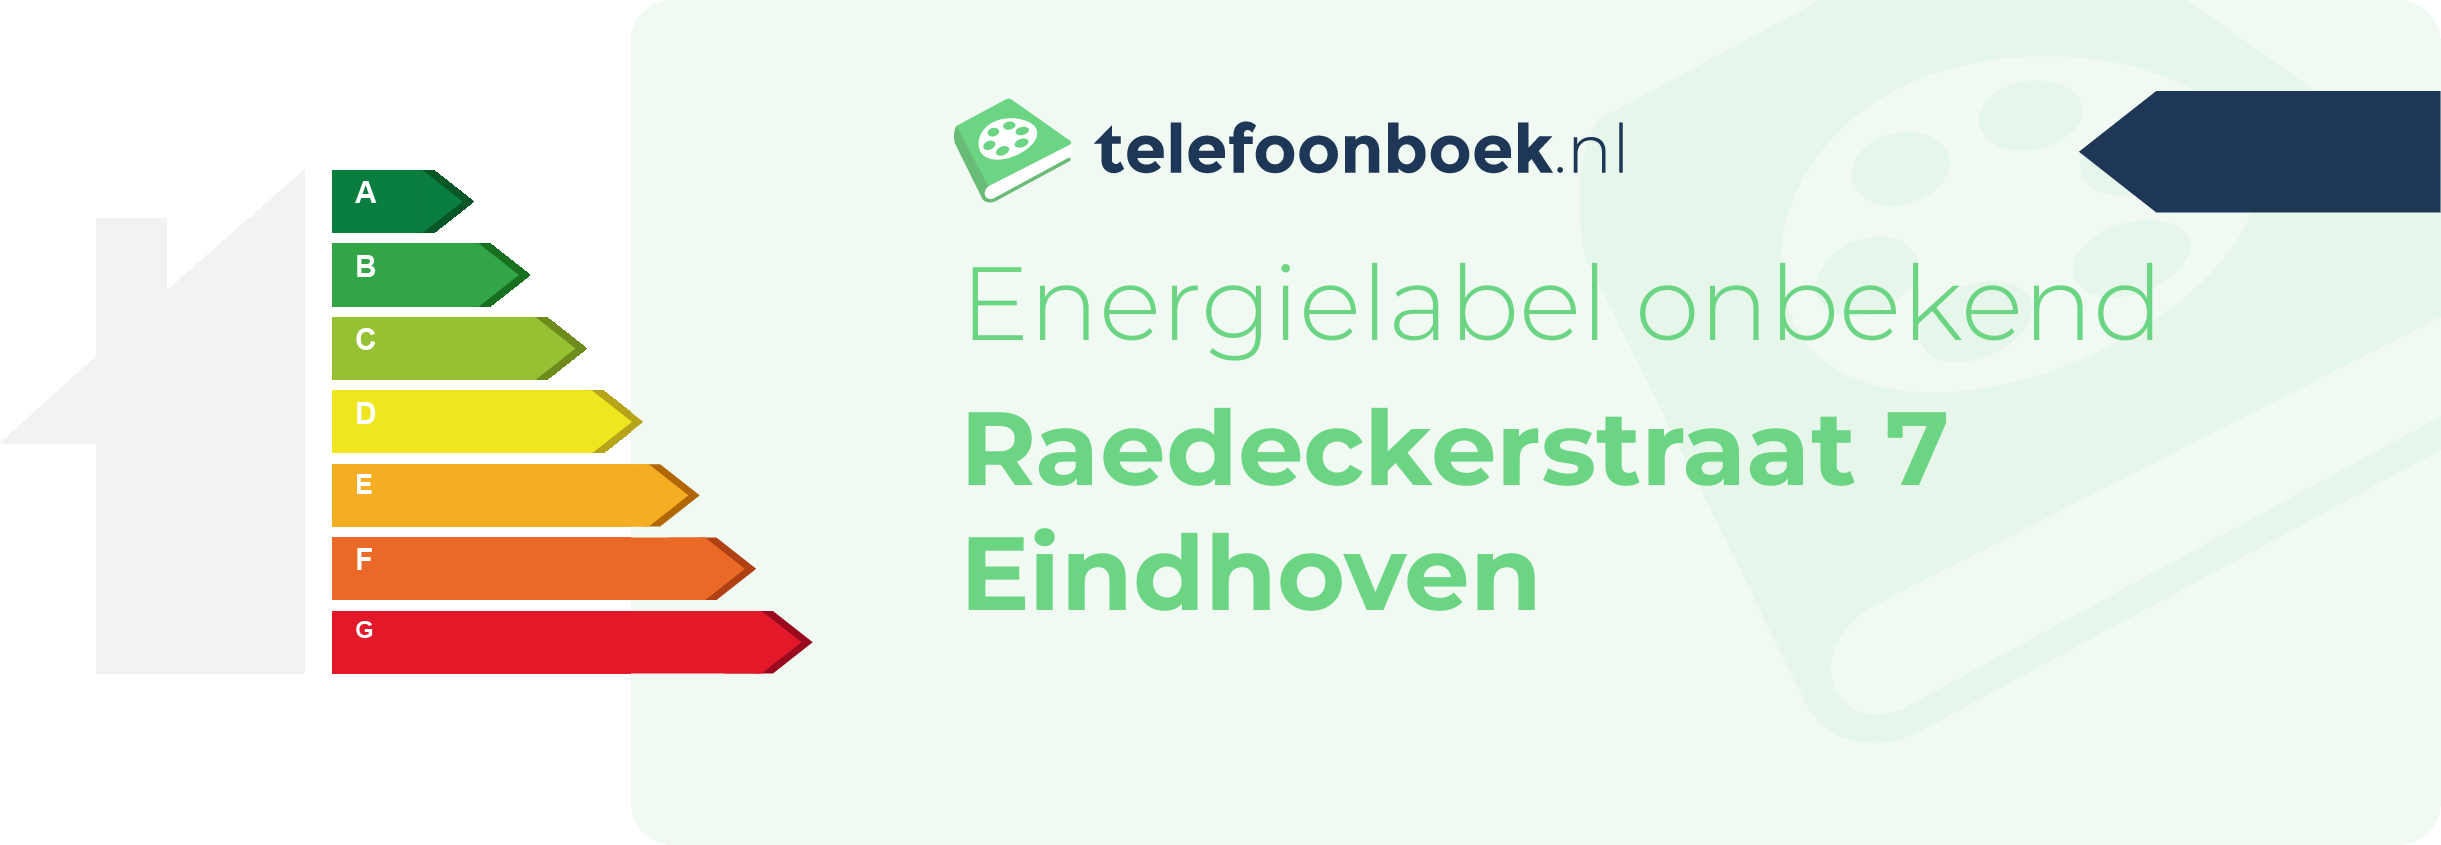 Energielabel Raedeckerstraat 7 Eindhoven